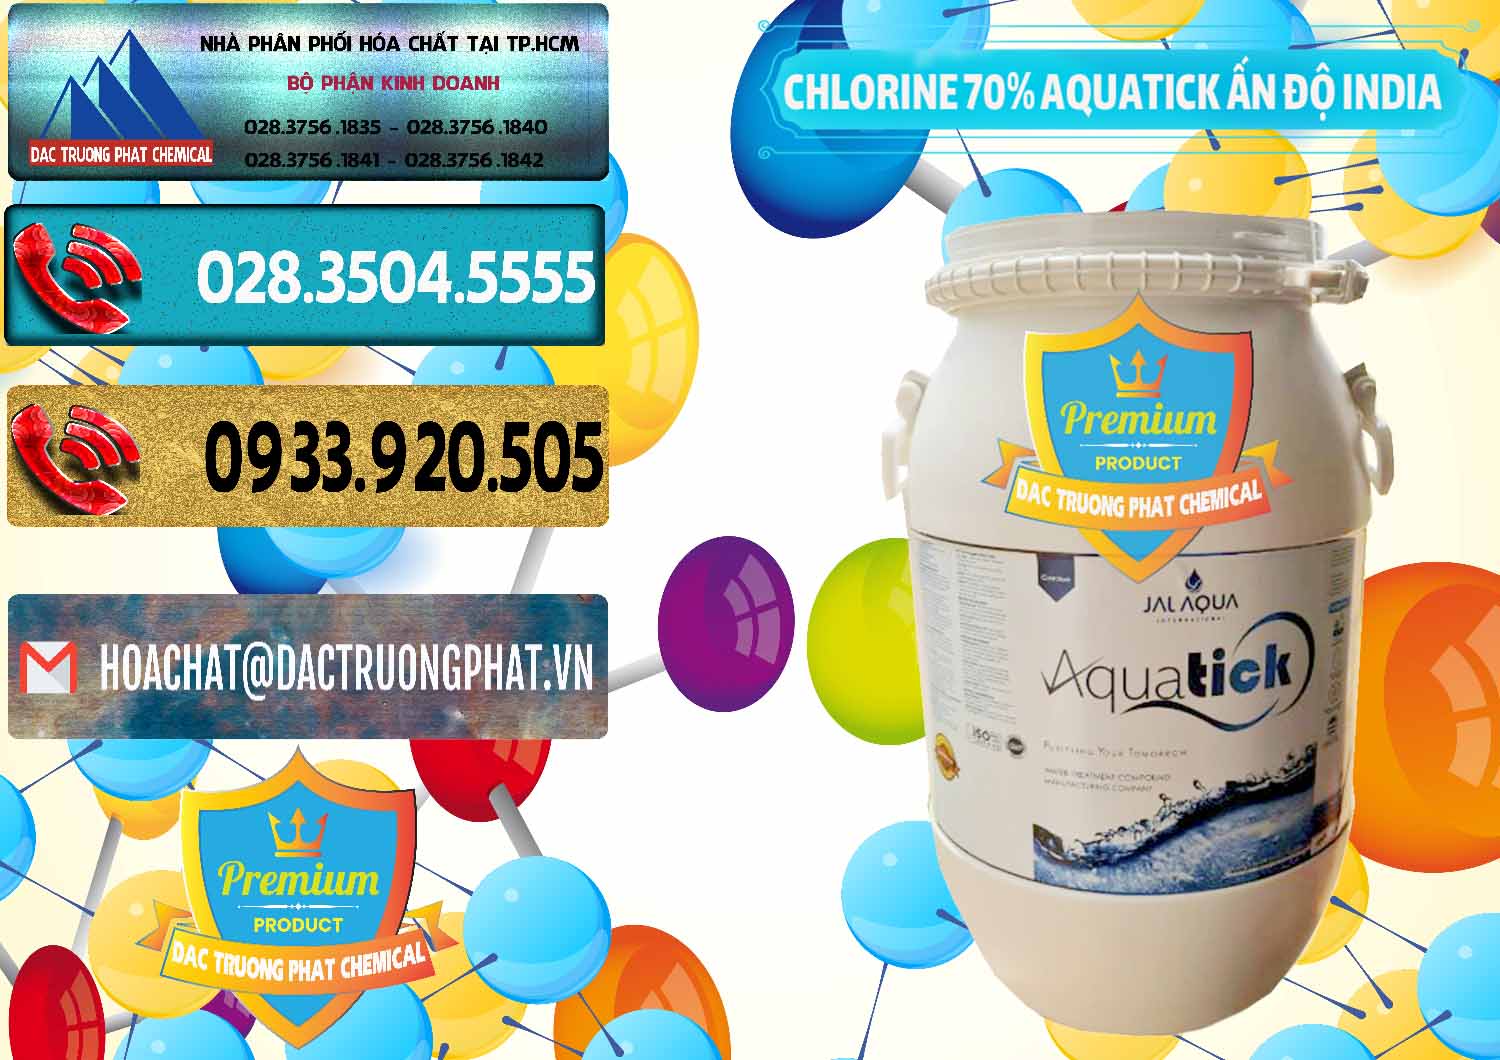 Cty chuyên cung ứng & bán Chlorine – Clorin 70% Aquatick Jal Aqua Ấn Độ India - 0215 - Cung cấp _ nhập khẩu hóa chất tại TP.HCM - hoachatdetnhuom.com